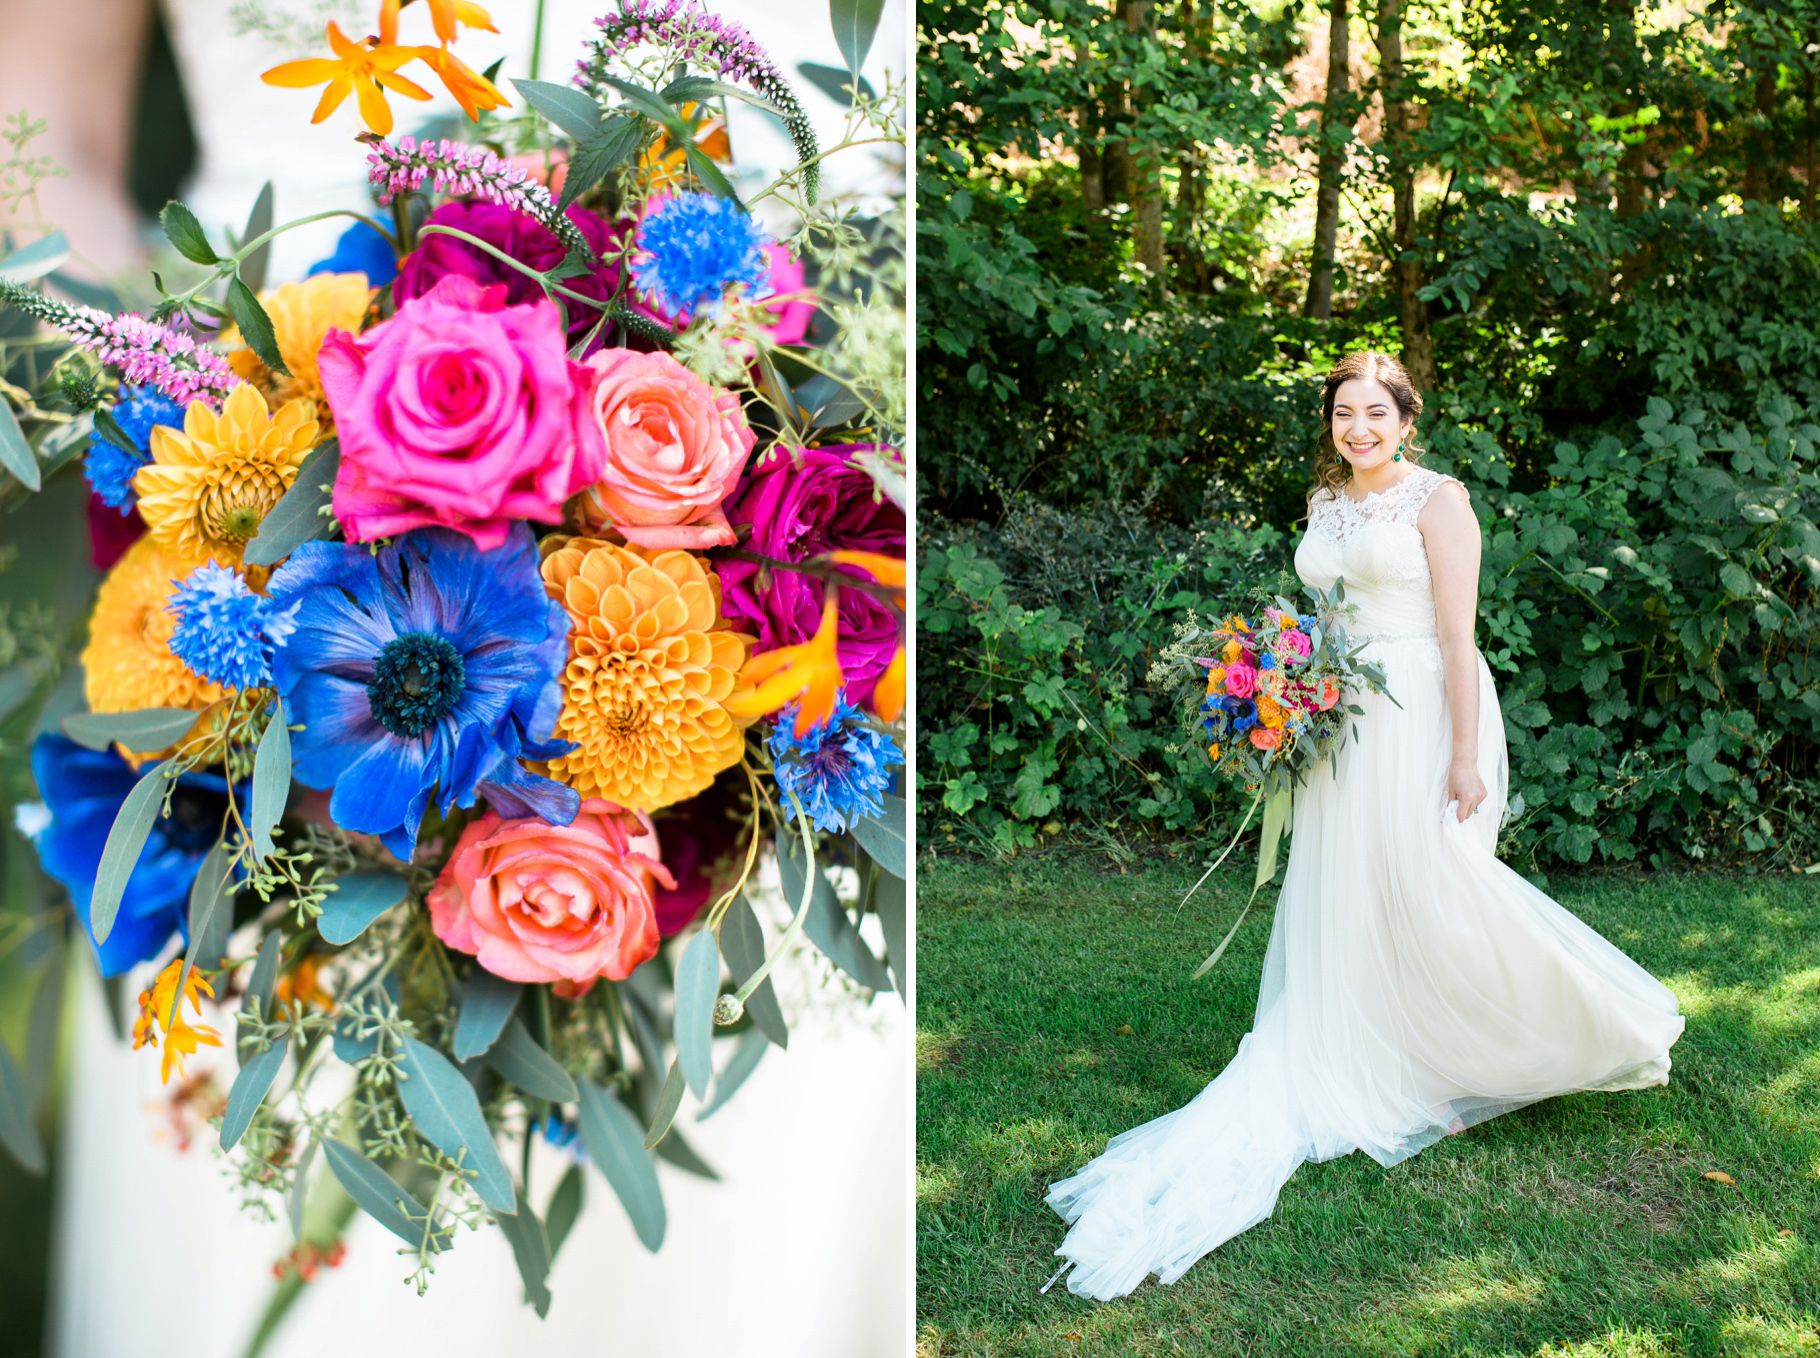 25-bridal-portraits-lace-dress-vibrant-colorful-bouquet-edmonds-seattle-wedding-photographer.jpg